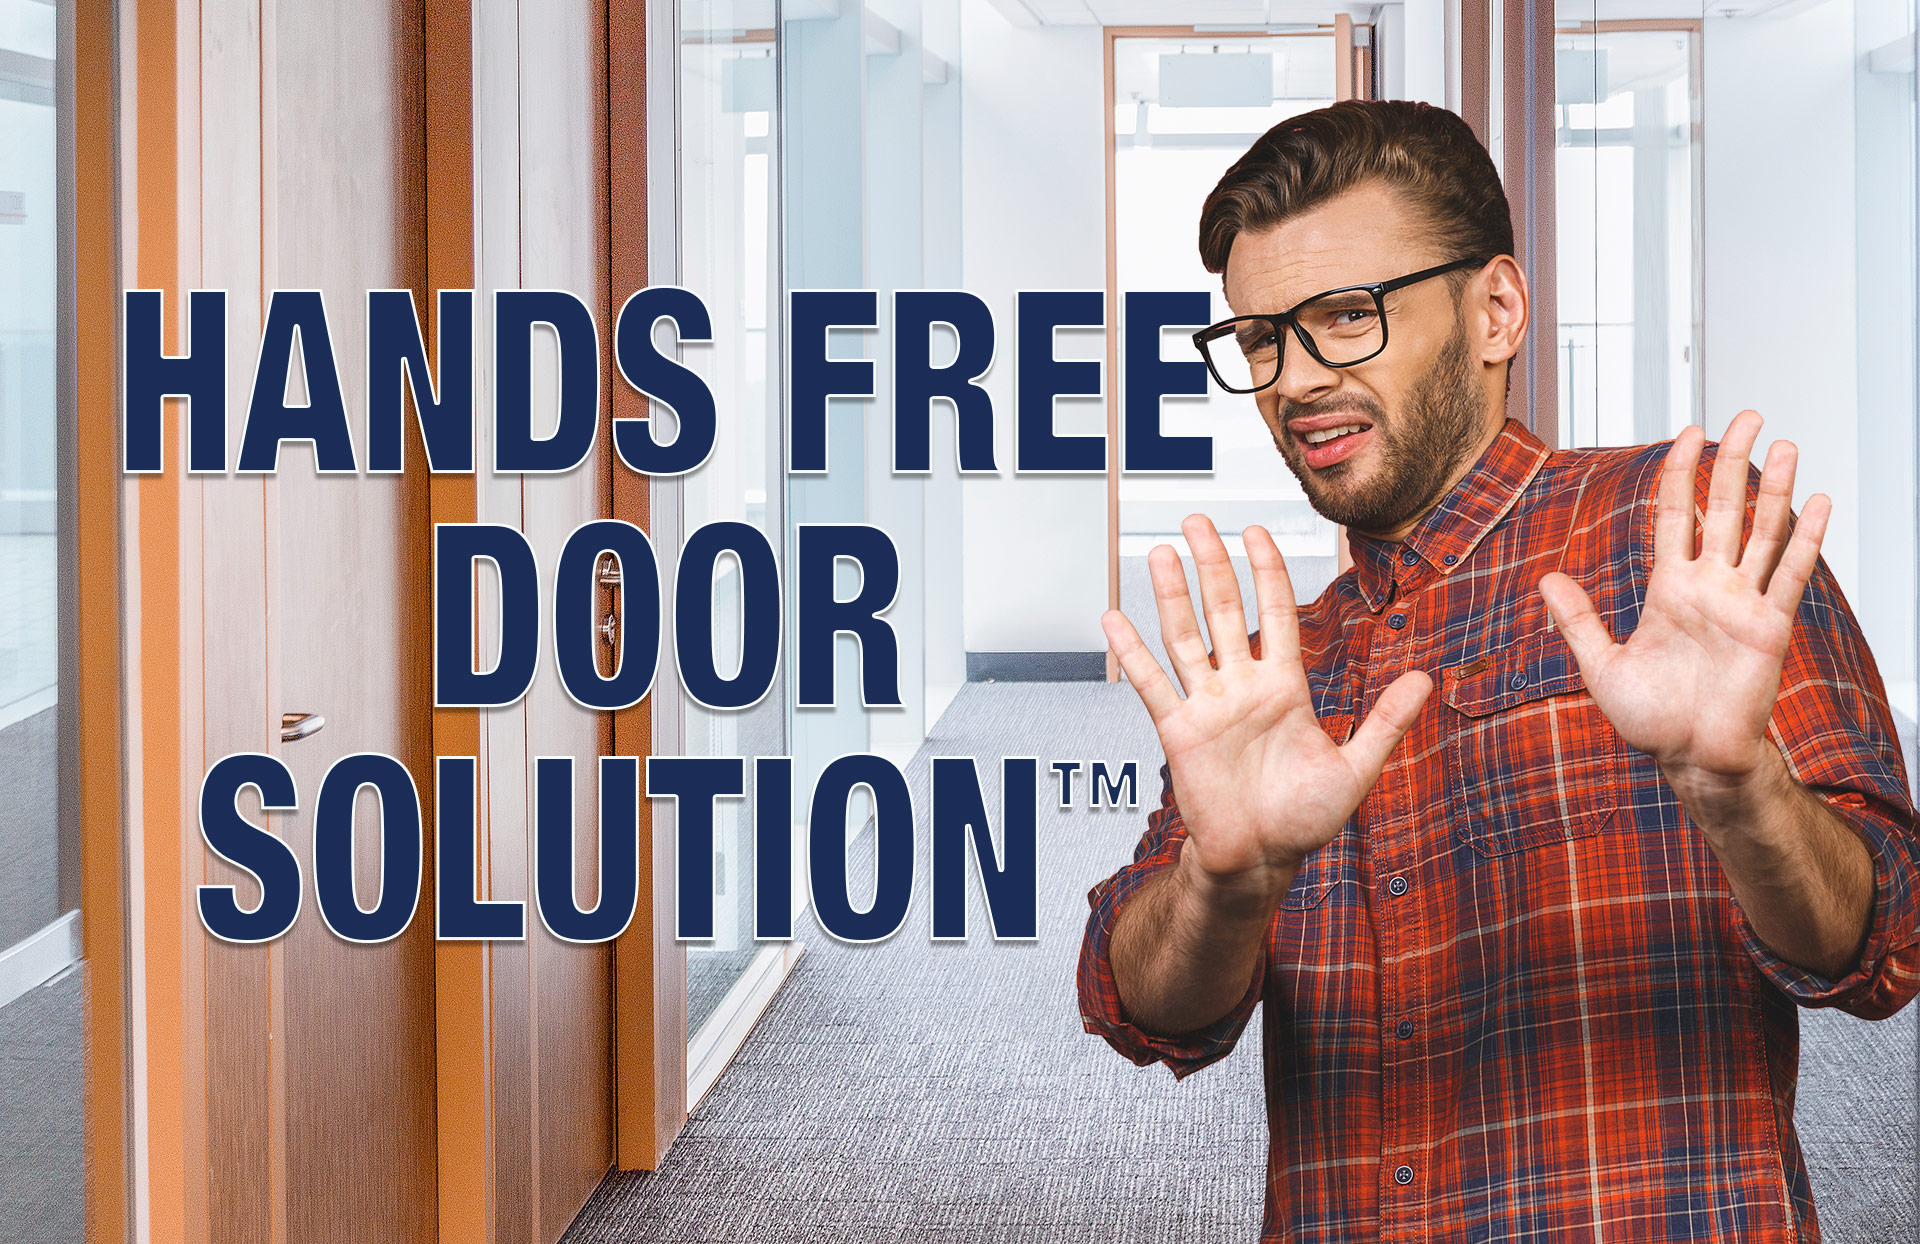 SDC's Hands Free Door Solution™